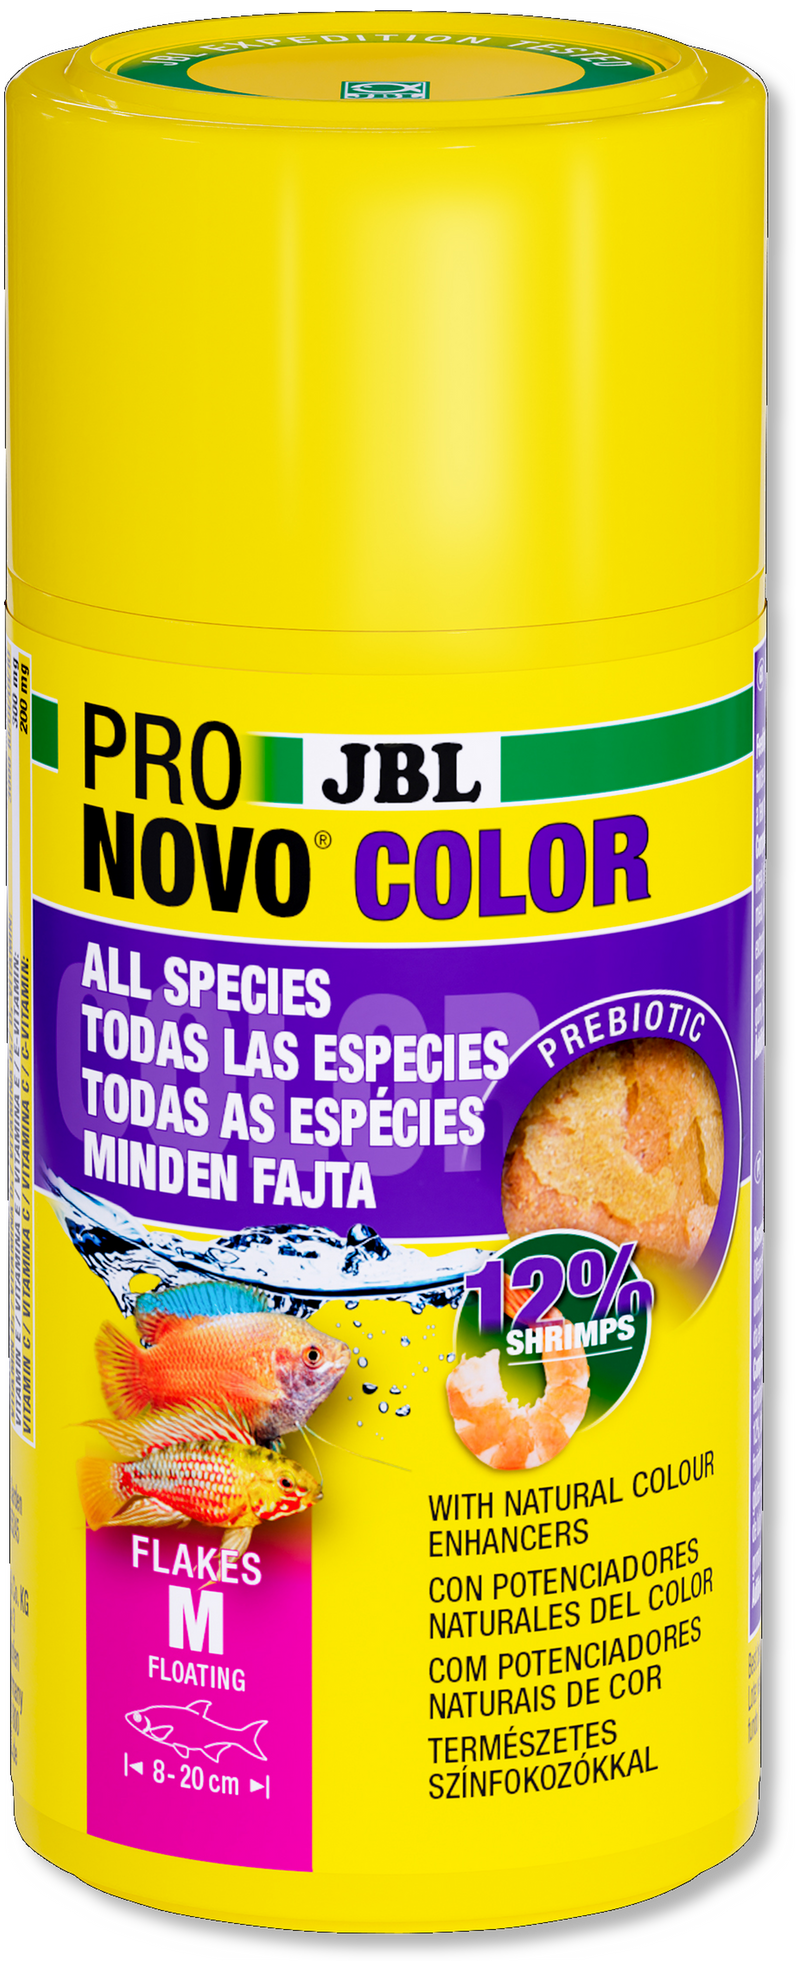 JBL ProNovo Colour M Flakes 250ml